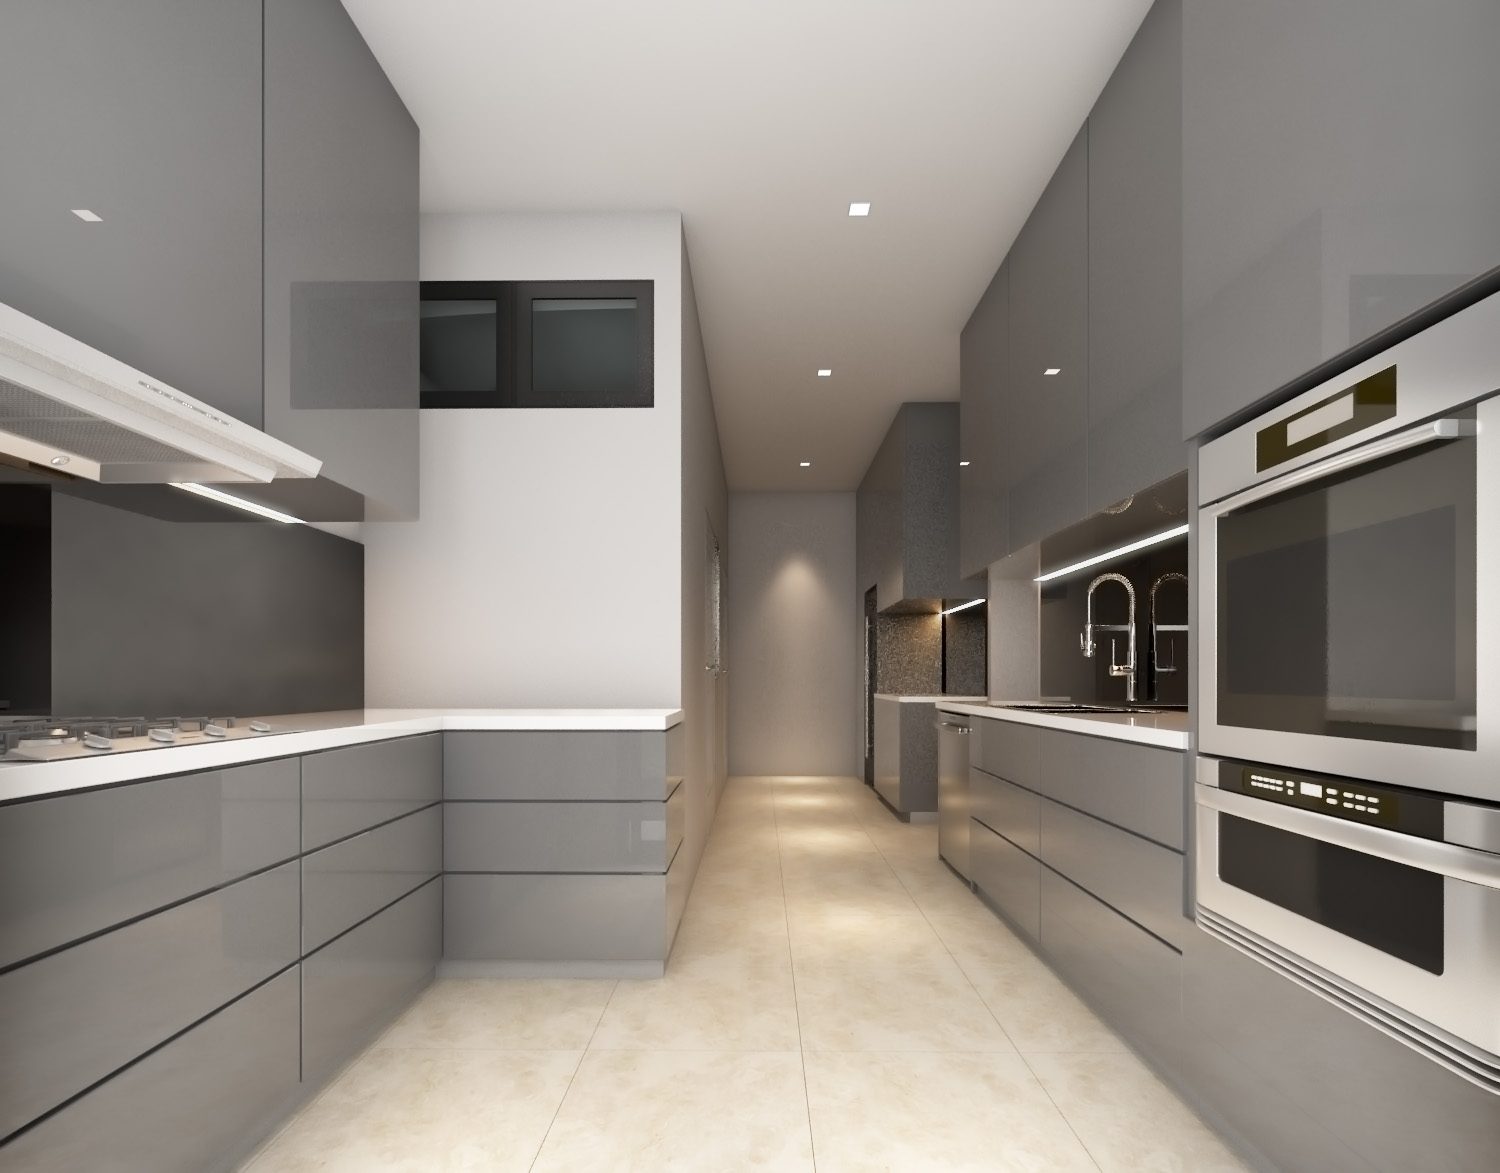 Modern minimalist Kitchen design for condominium in 11 Mont Kiara. Project by:Hatch Design